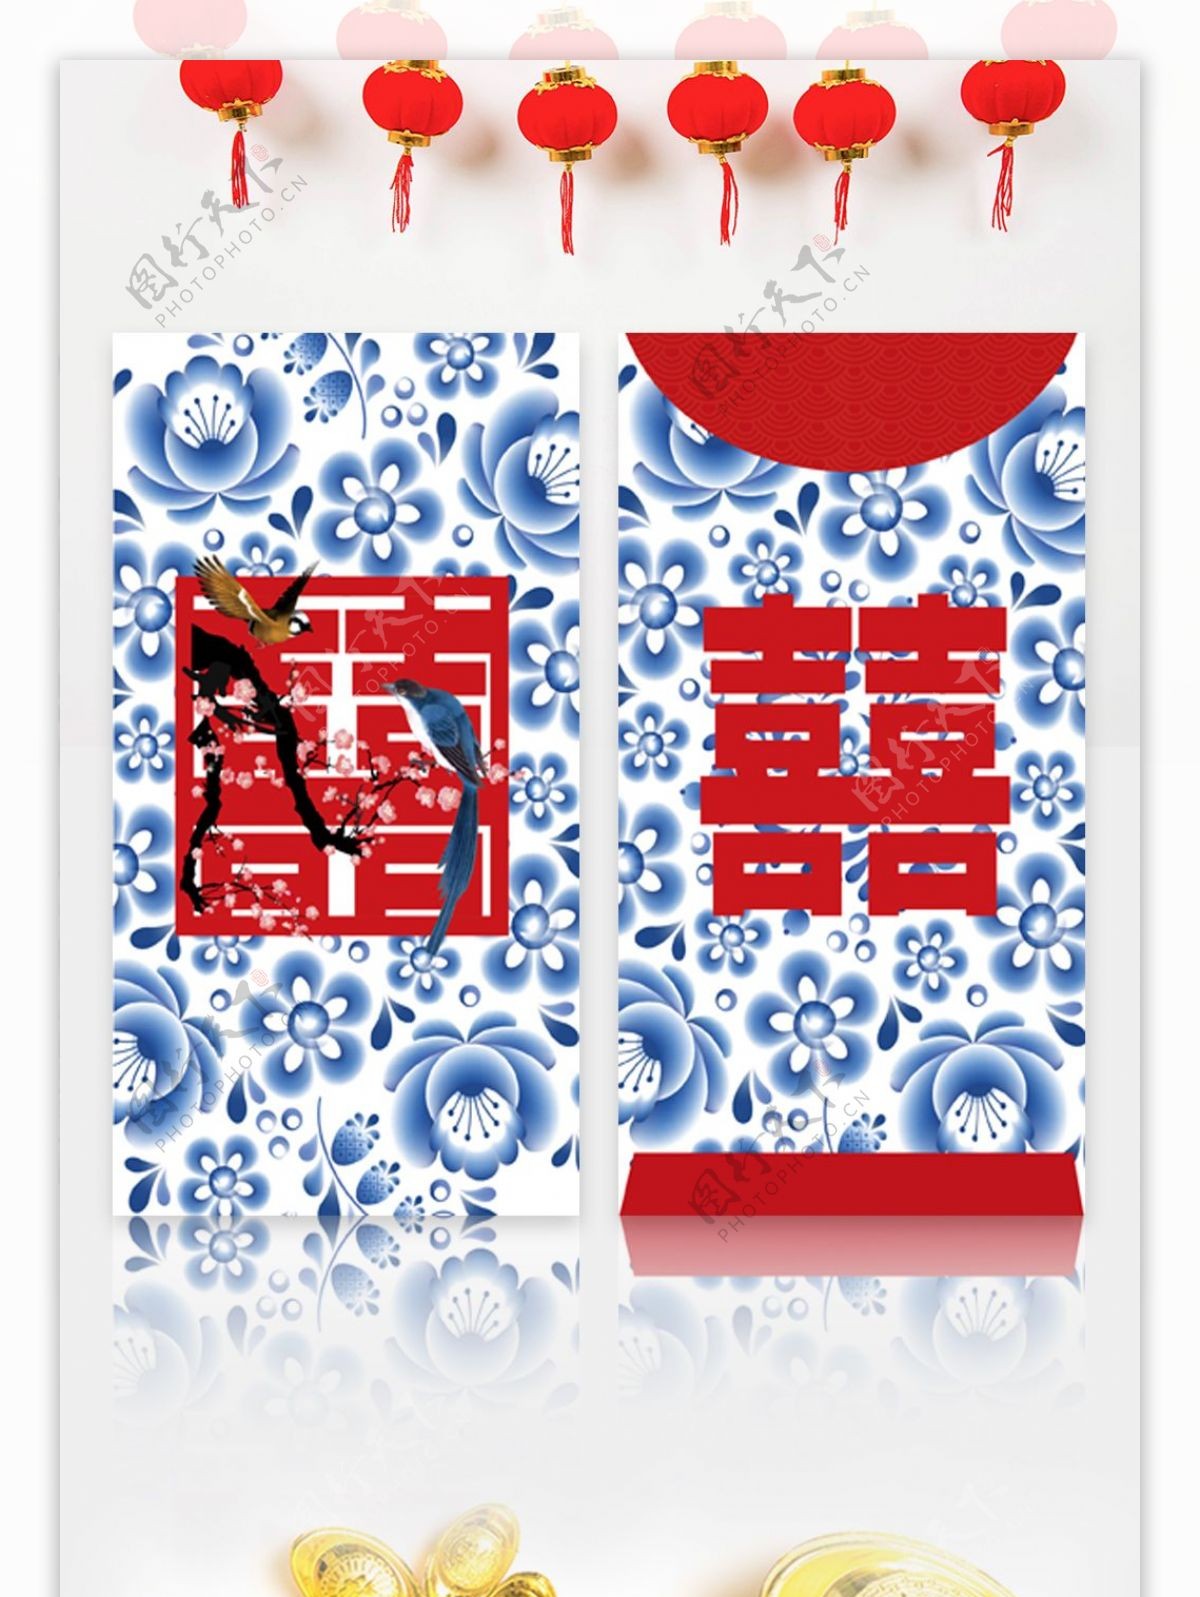 中国风青花瓷双喜字婚礼红包矢量模板